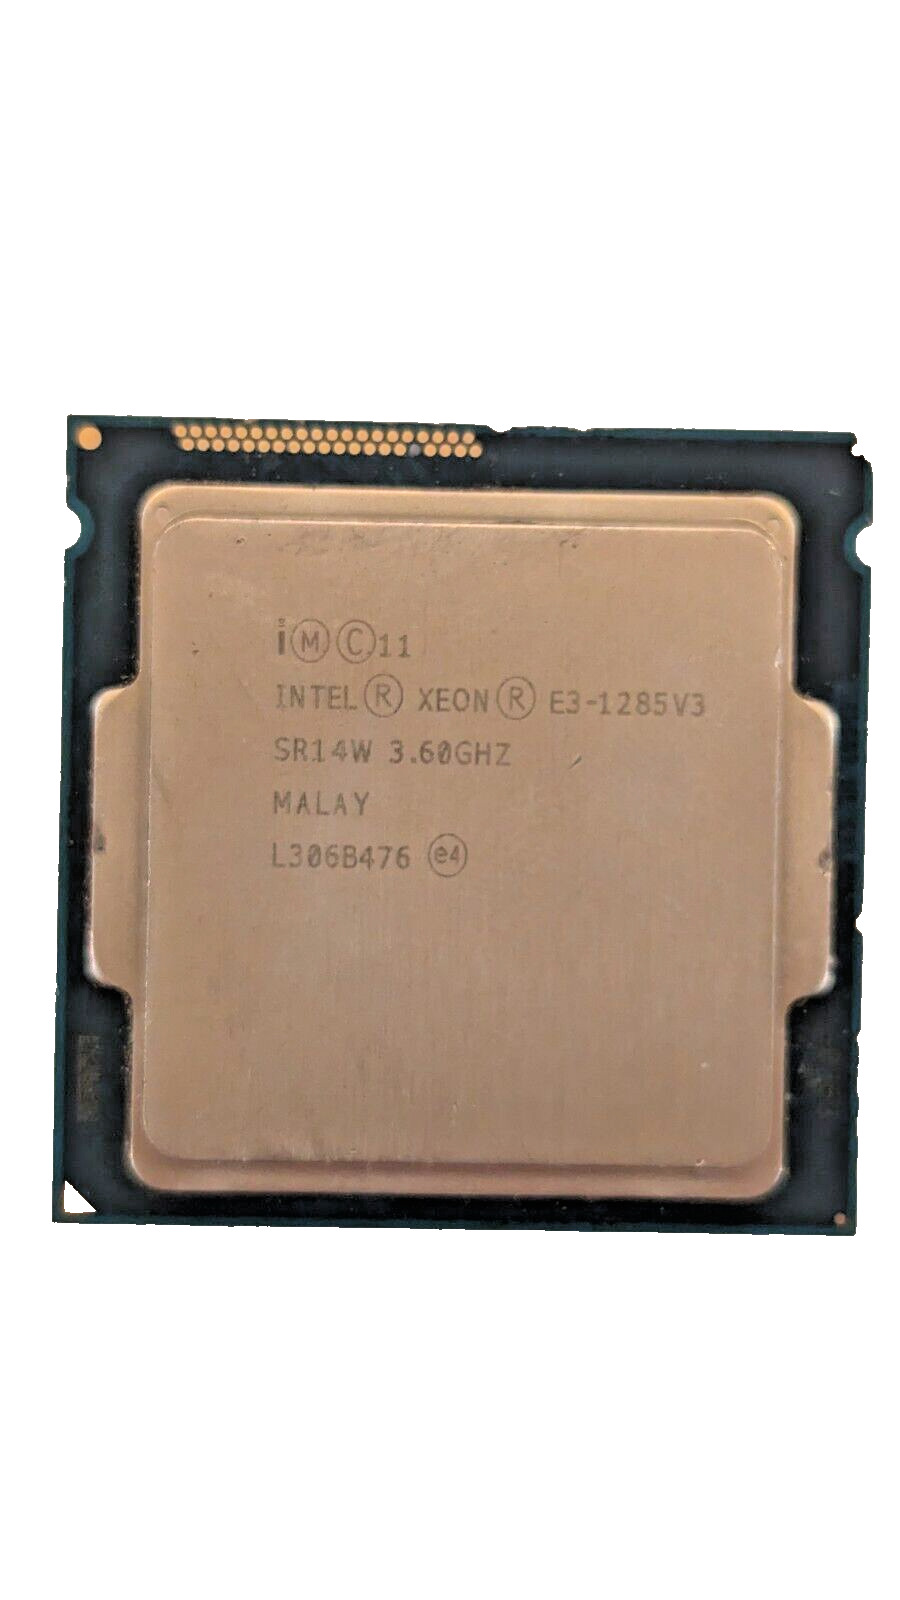 Intel Xeon E3-1285 V3 3.6 - 4.0 GHz 8M Quad-Core SR14W CPU Processor